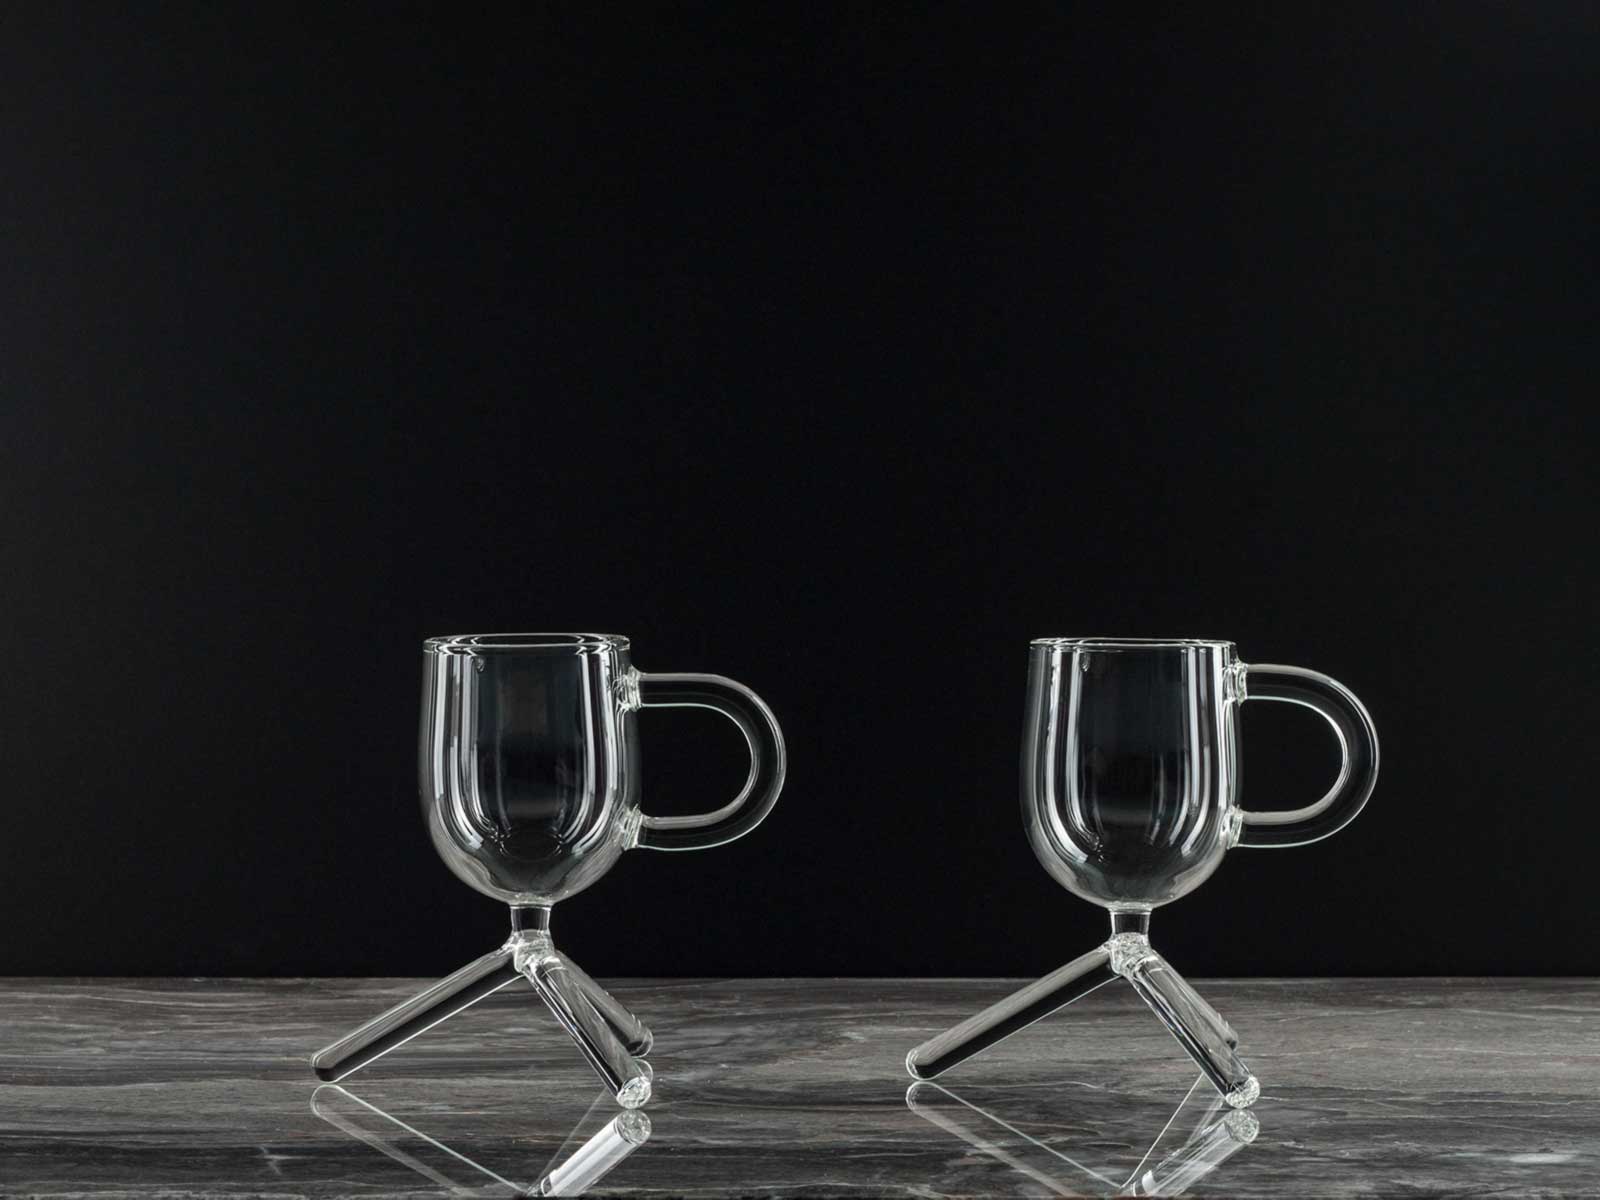 Tripod Espresso Glass 50 ml Ristretto Cup, Designed for Barista's